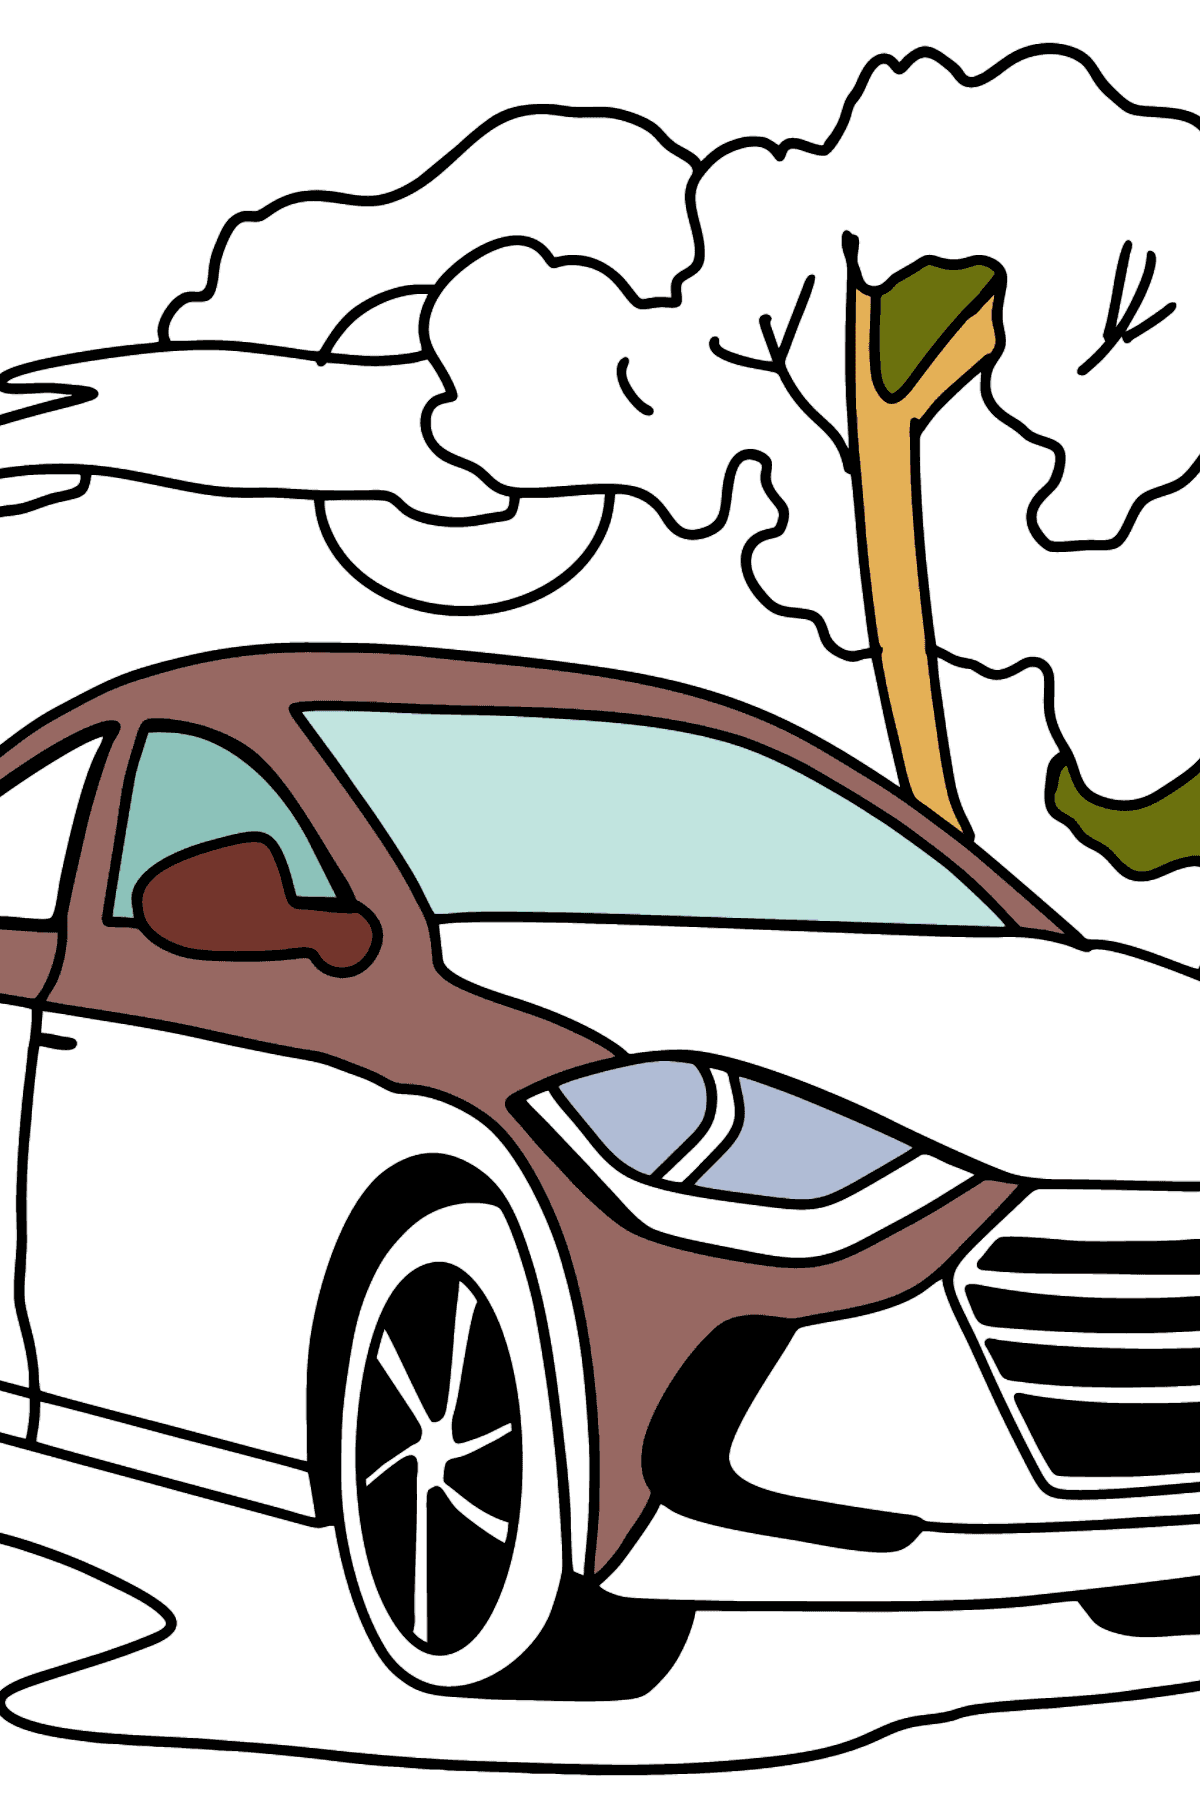 Disegno di auto Hyundai da colorare - Disegni da colorare per bambini